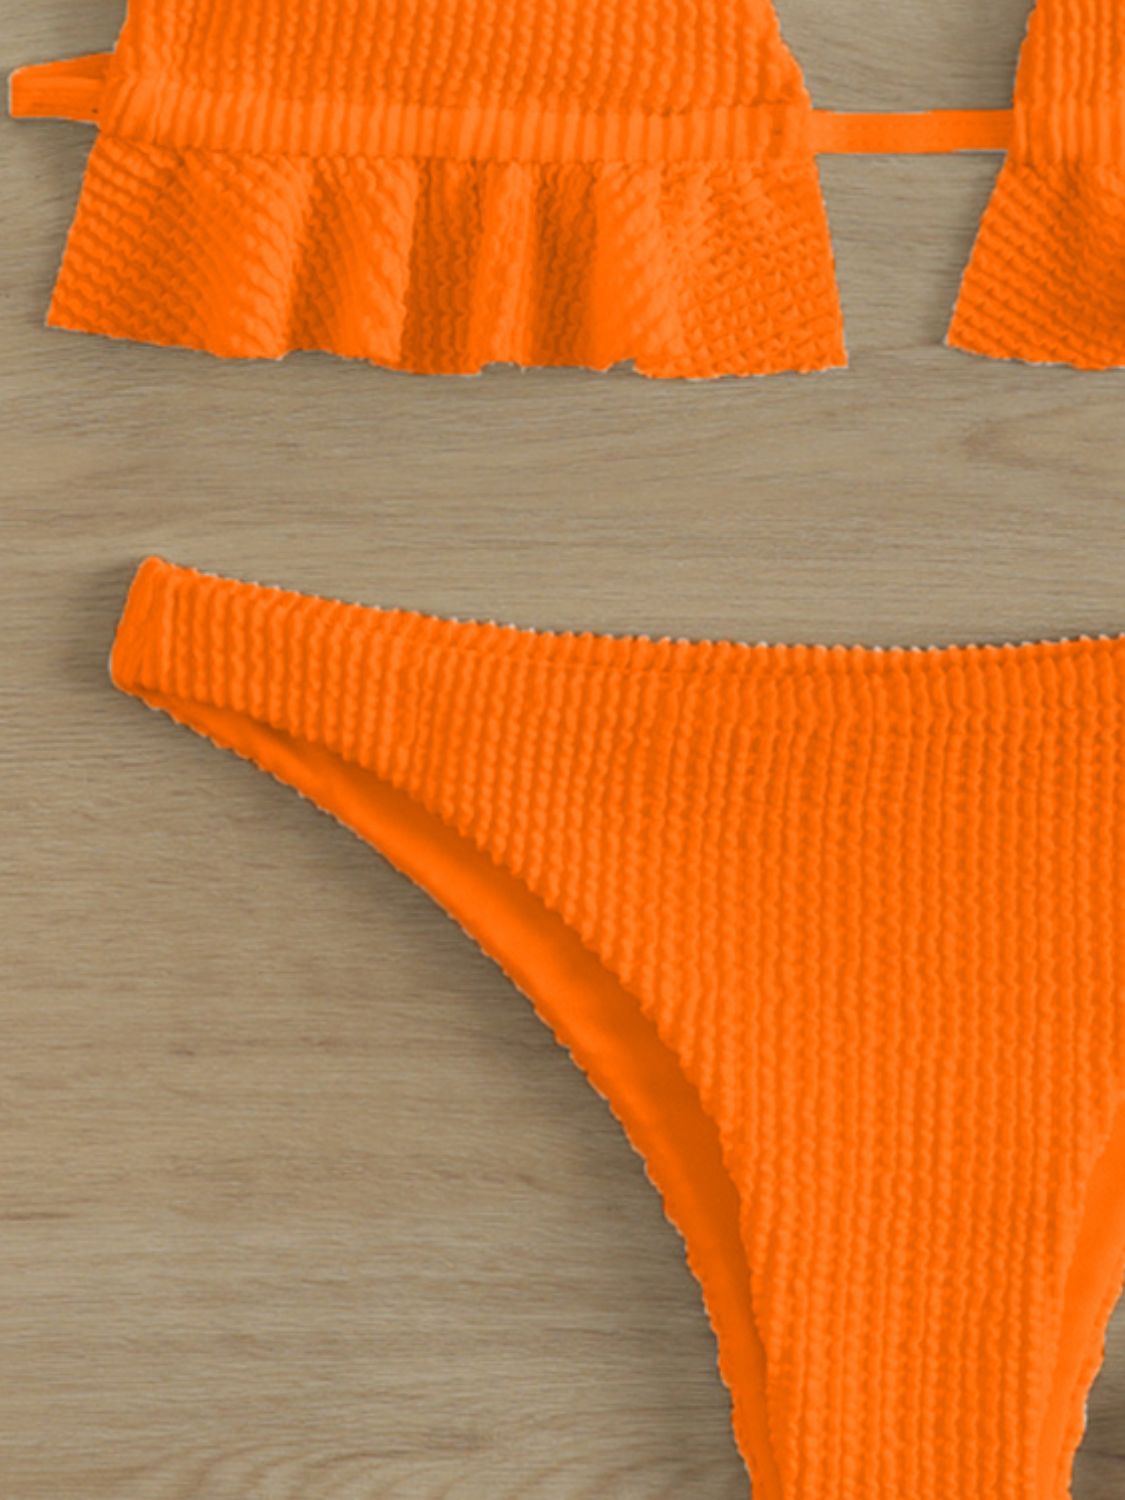 an orange bikini top and bottom with ruffles